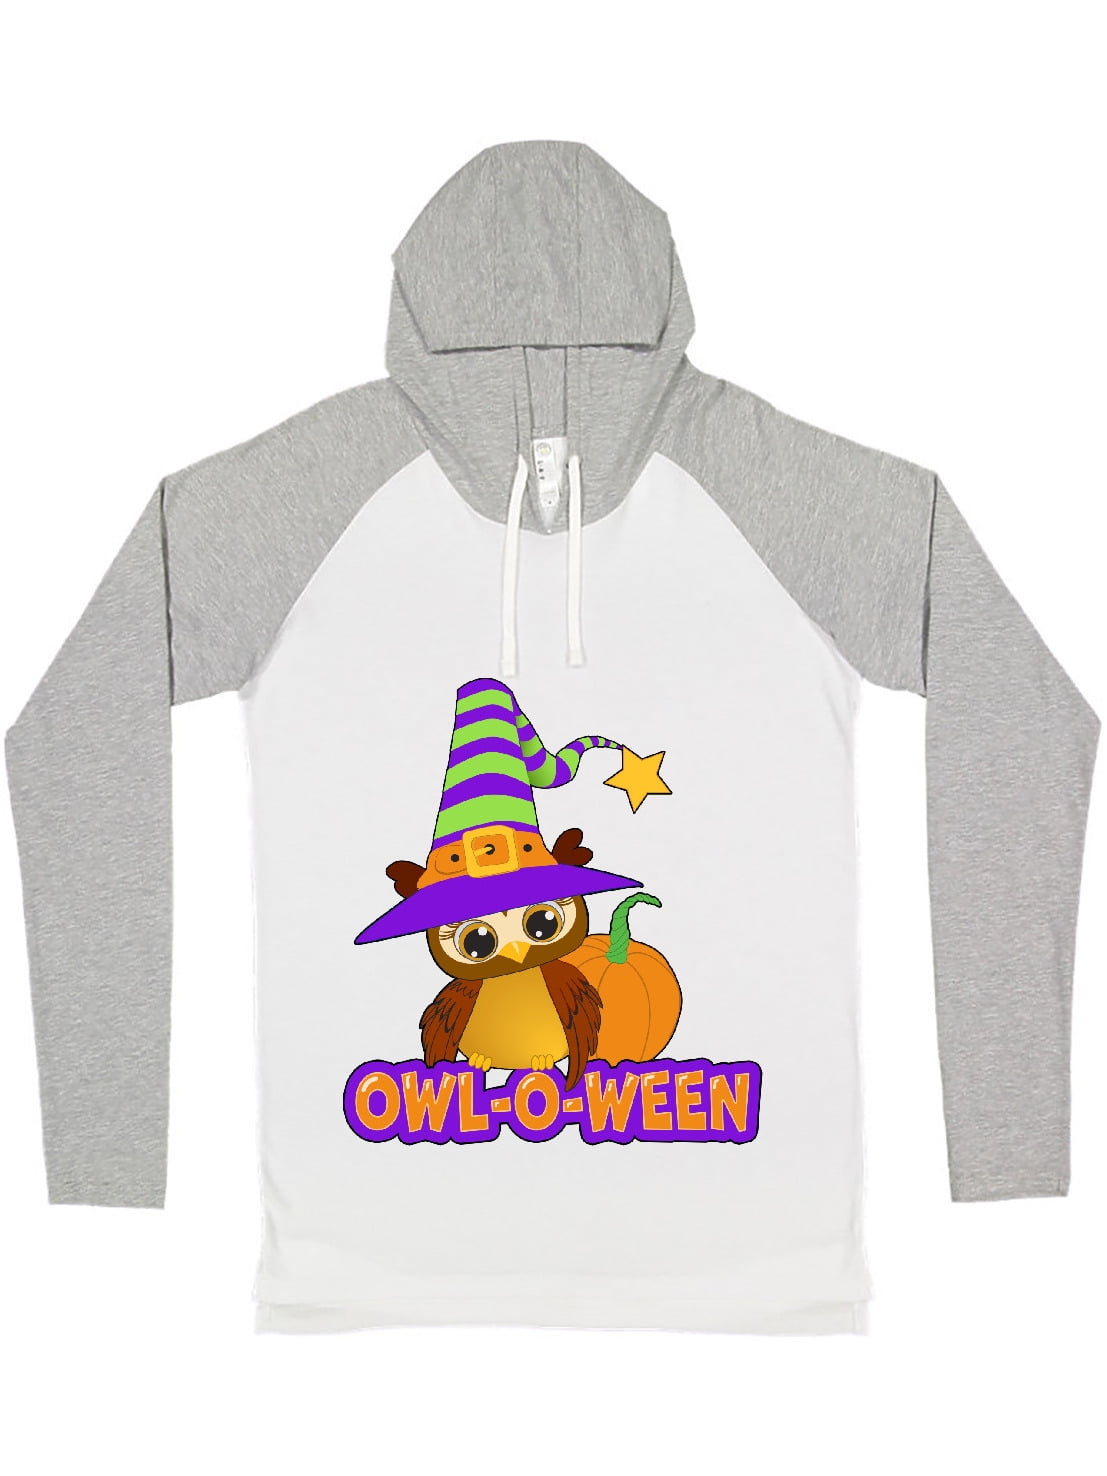 Girls Fall Shirt;Girl Owl Shirt;Autumn Owl;Thanksgiving Shirt;Girls Raglan Tee;Fall Embroidered Shirt;Pumpkin Orange;Personalized Shirt